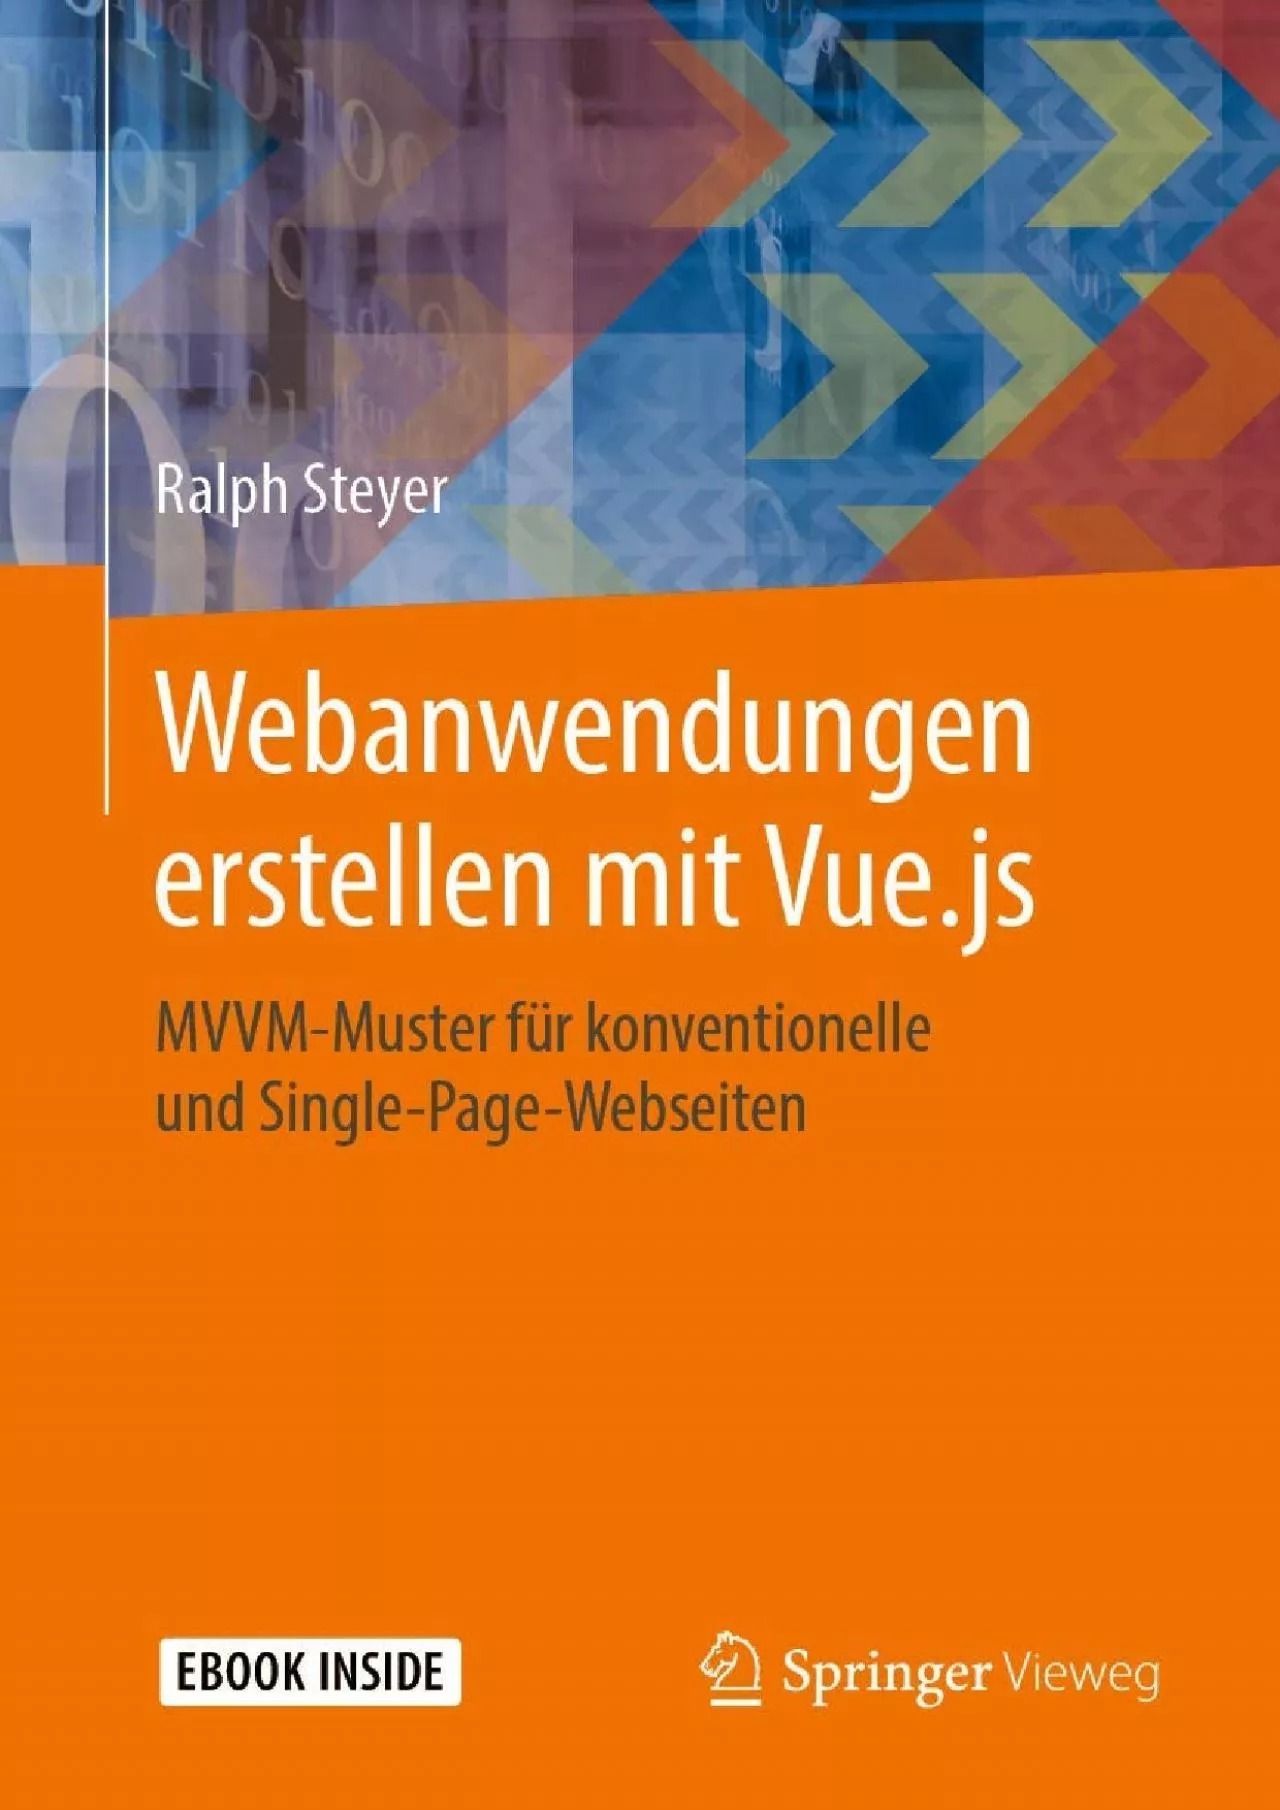 [BEST]-Webanwendungen erstellen mit Vue.js: MVVM-Muster für konventionelle und Single-Page-Webseiten